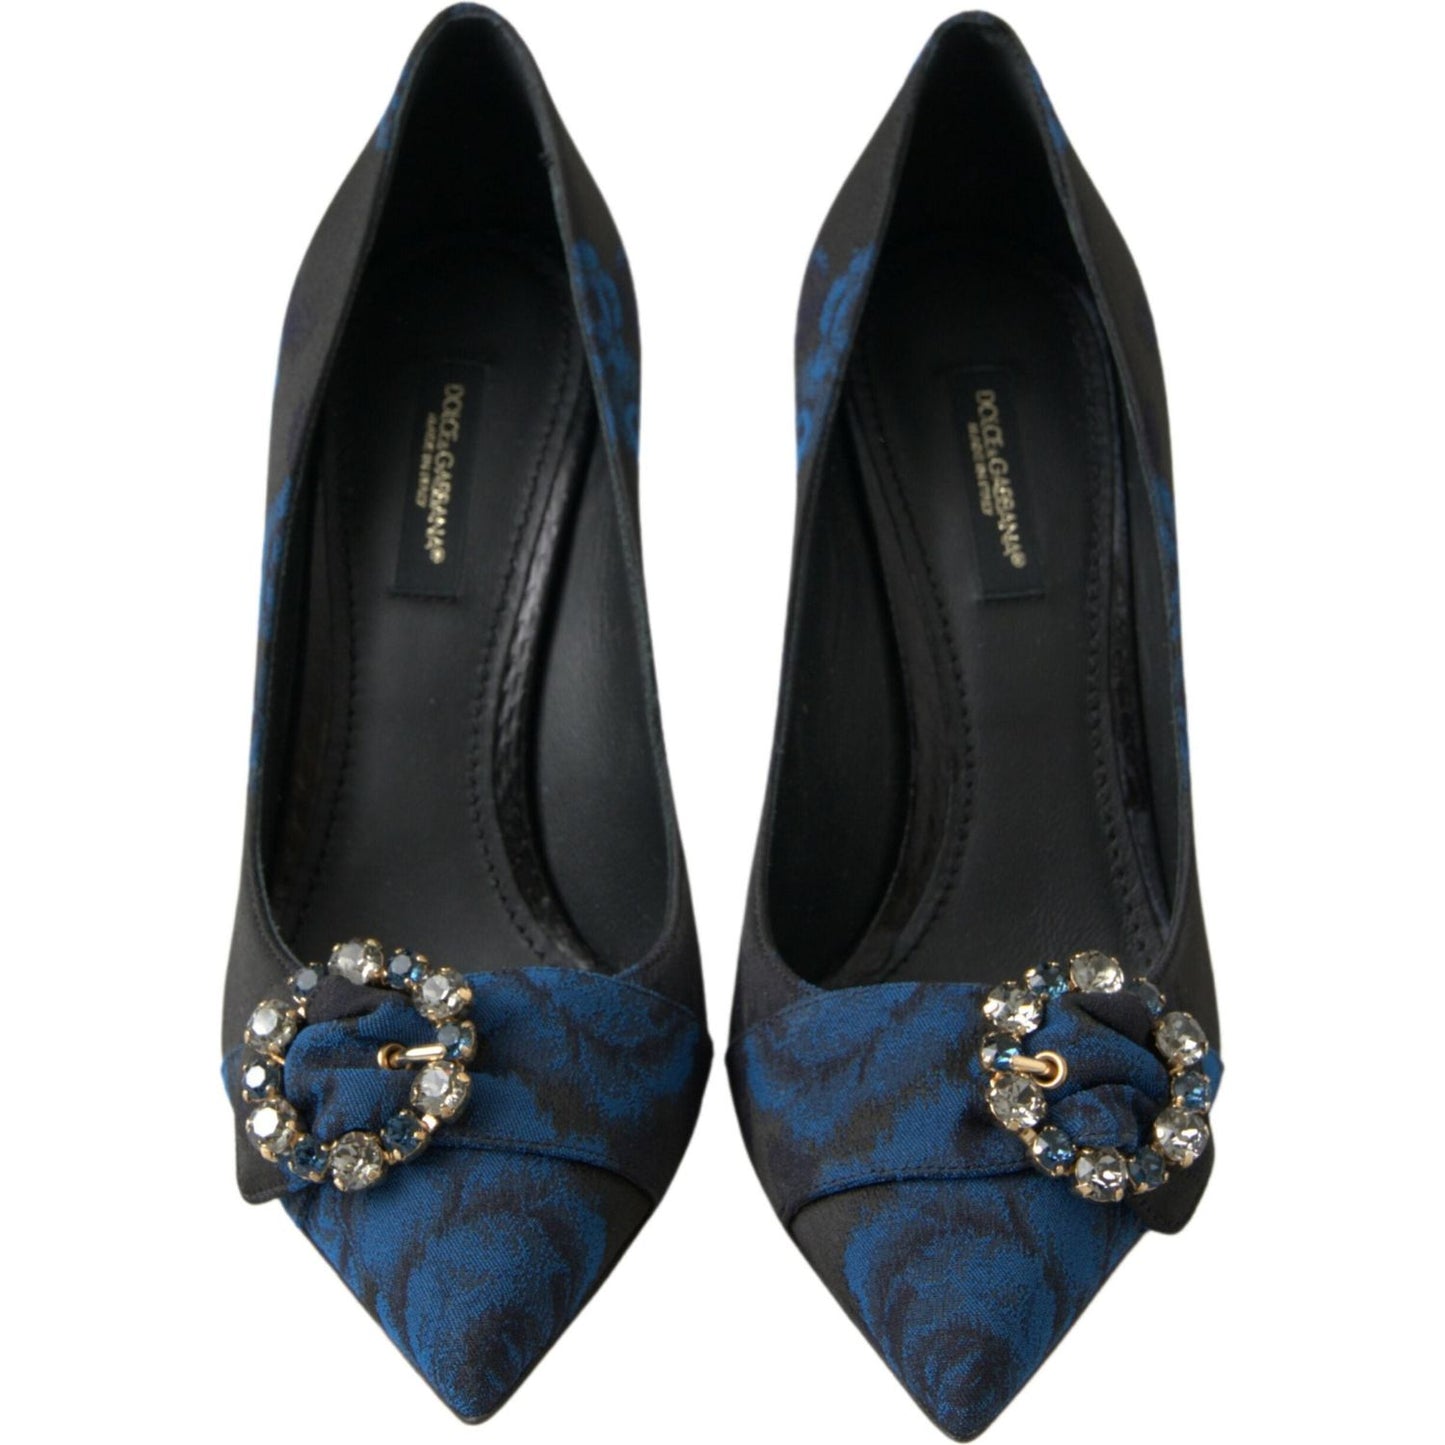 Dolce & Gabbana | Elegant Blue Crystal Embellished Pumps| McRichard Designer Brands   